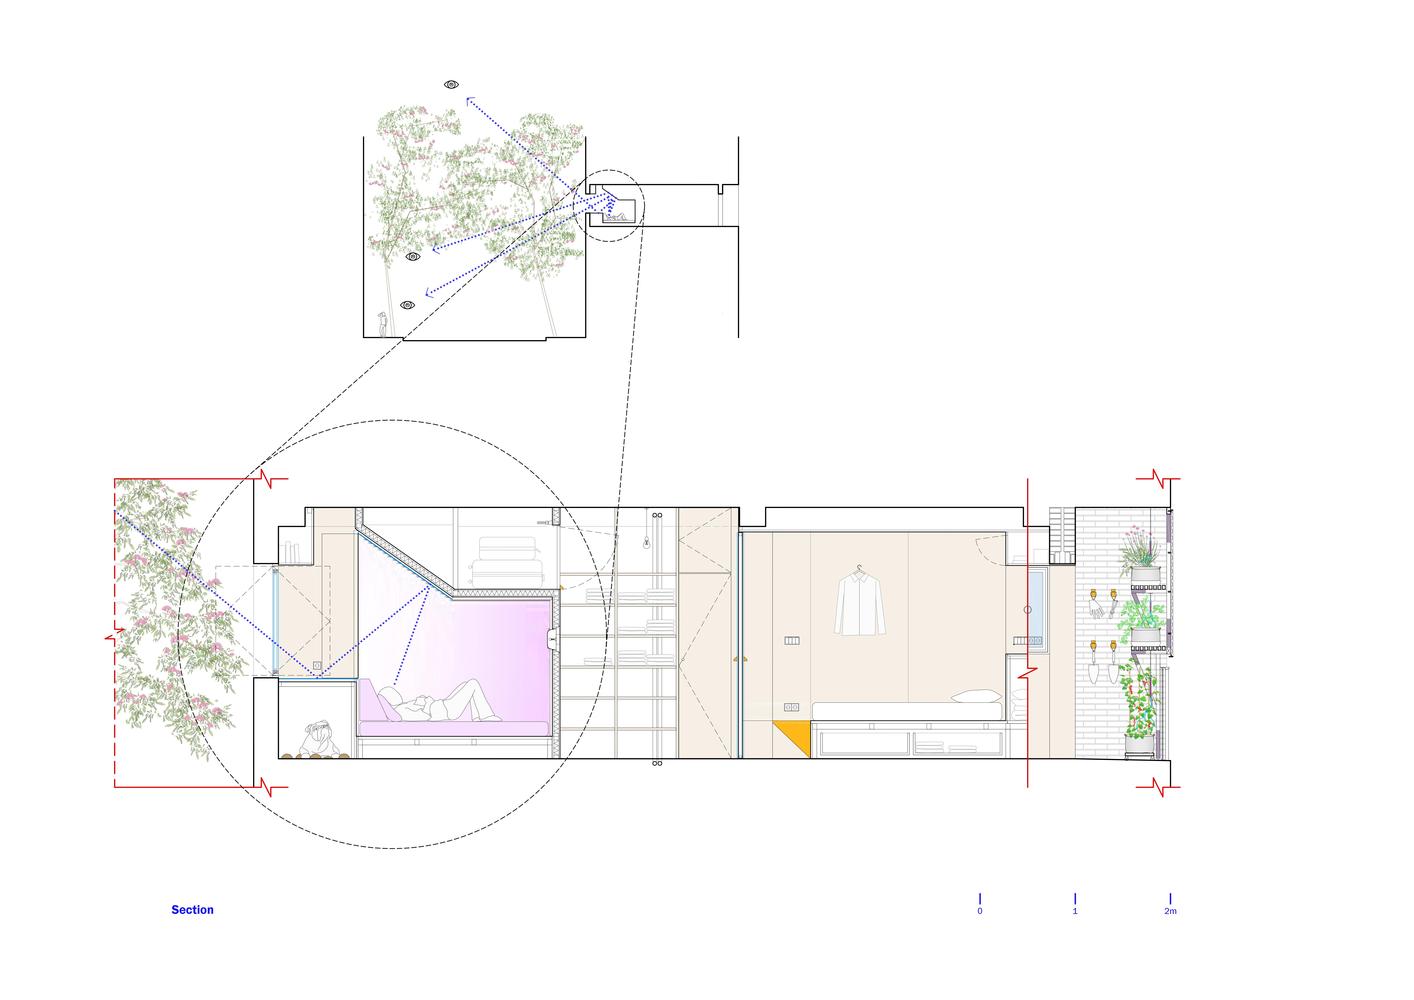 Sebze bahçeli apartman dairesi bir doktor ve köpeği için tasarlandı